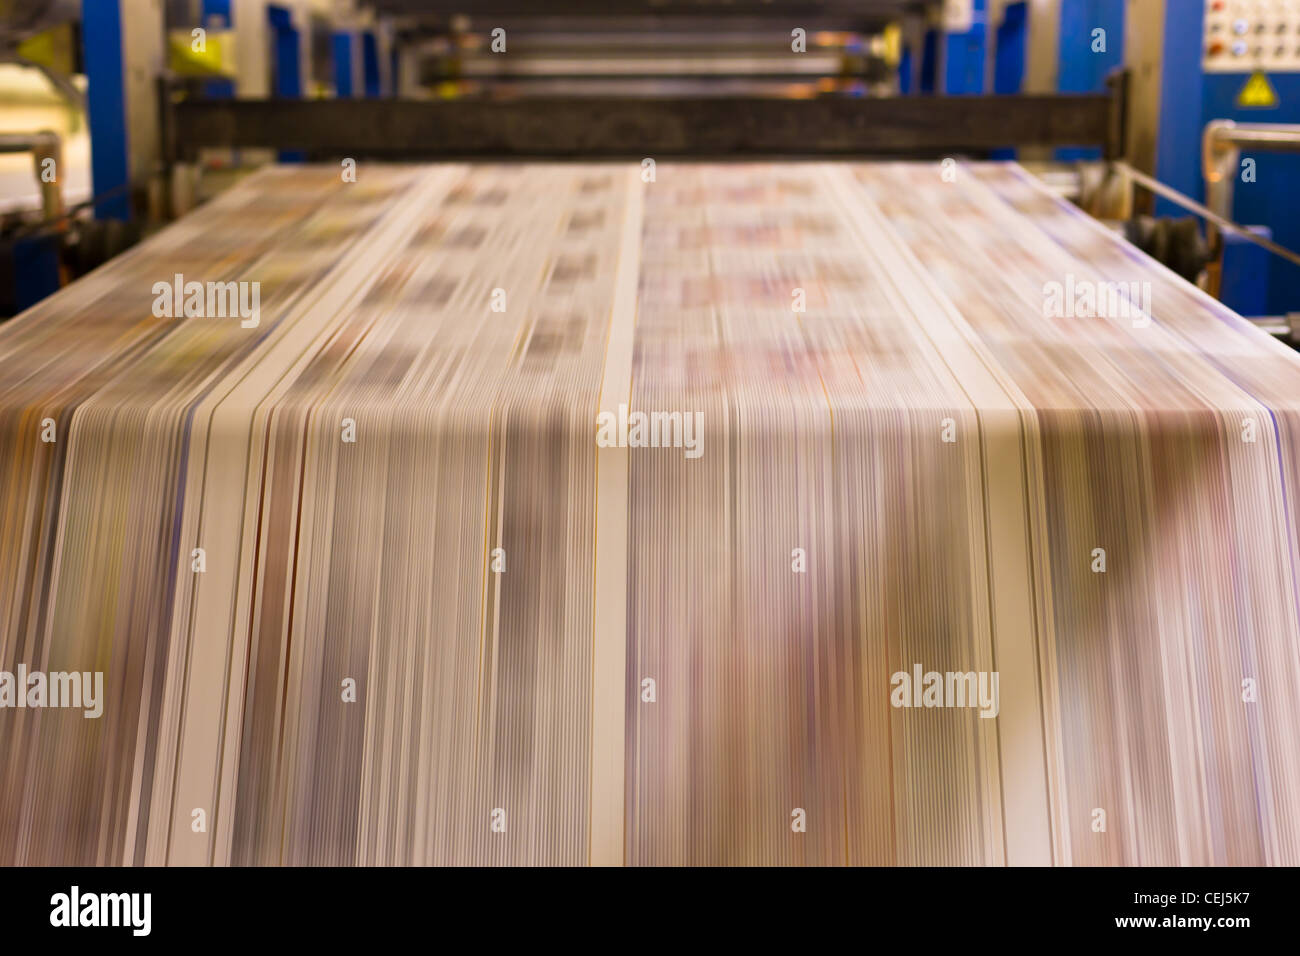 Newspaper printing press - Stock Image - V290/0048 - Science Photo